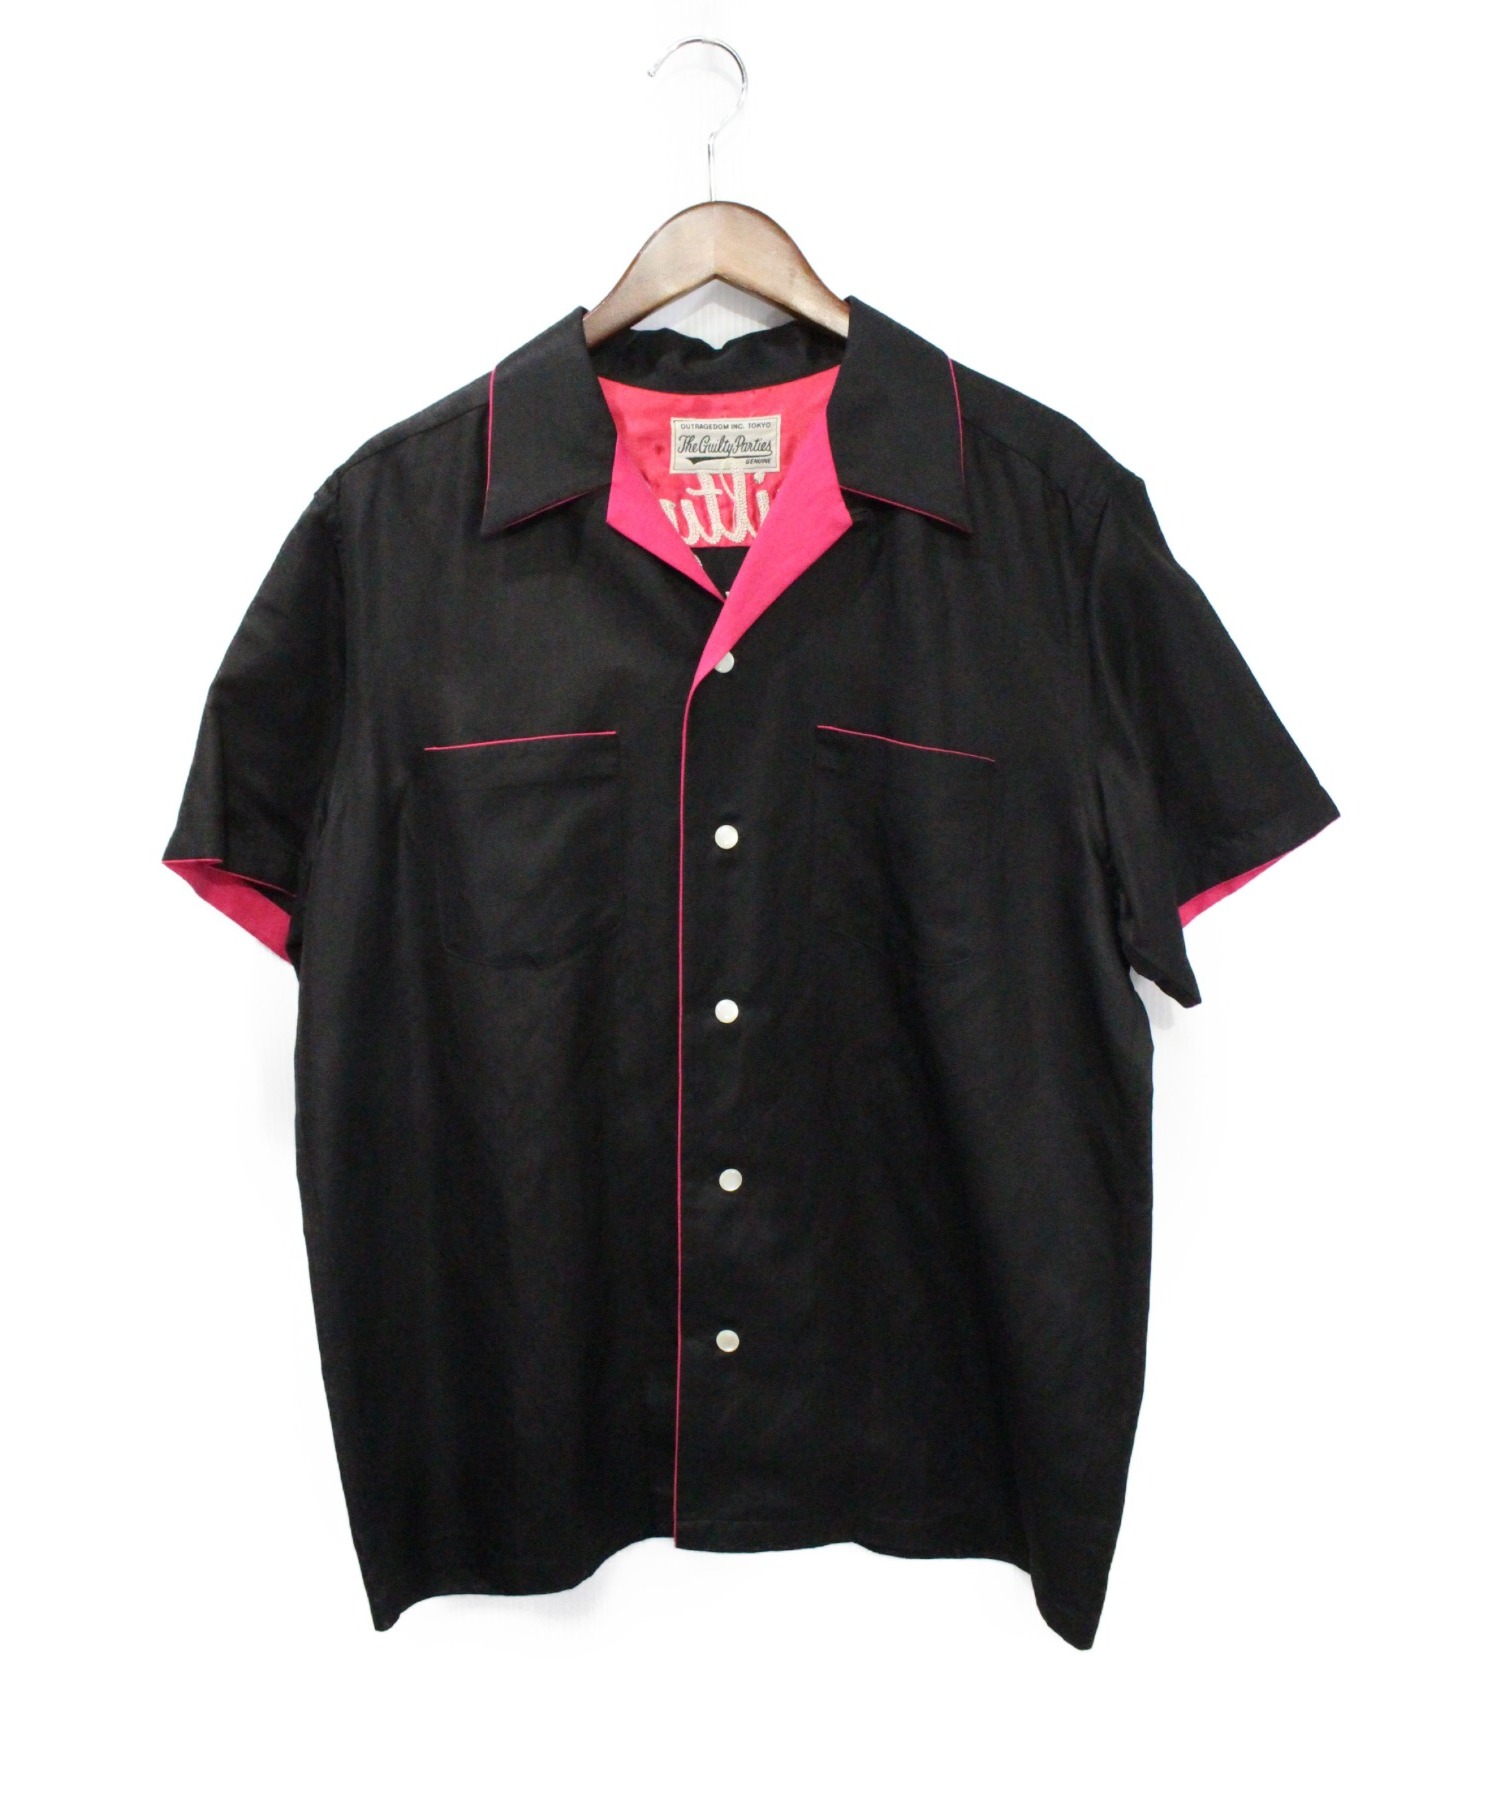 WACKO MARIA (ワコマリア) マリア刺繍オープンカラーシャツ ブラック サイズ:XL